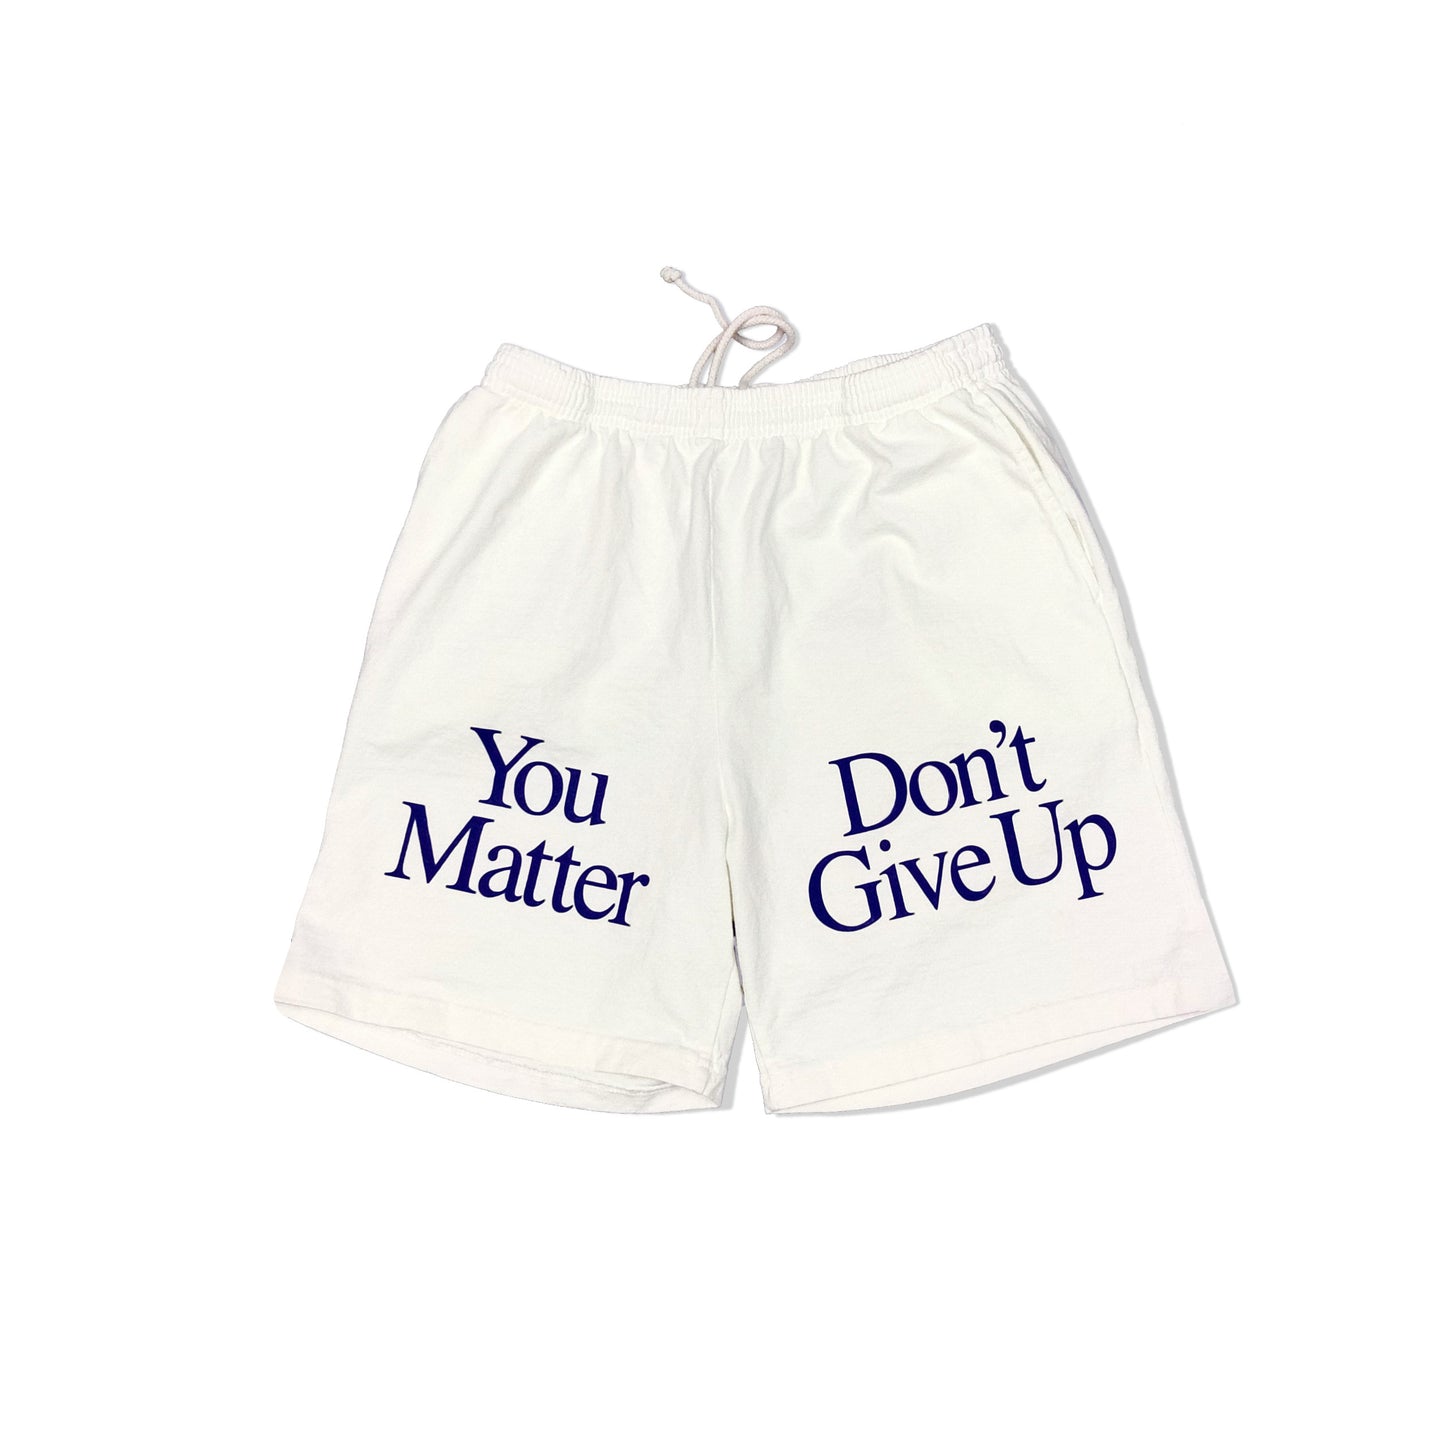 You Matter Shorts